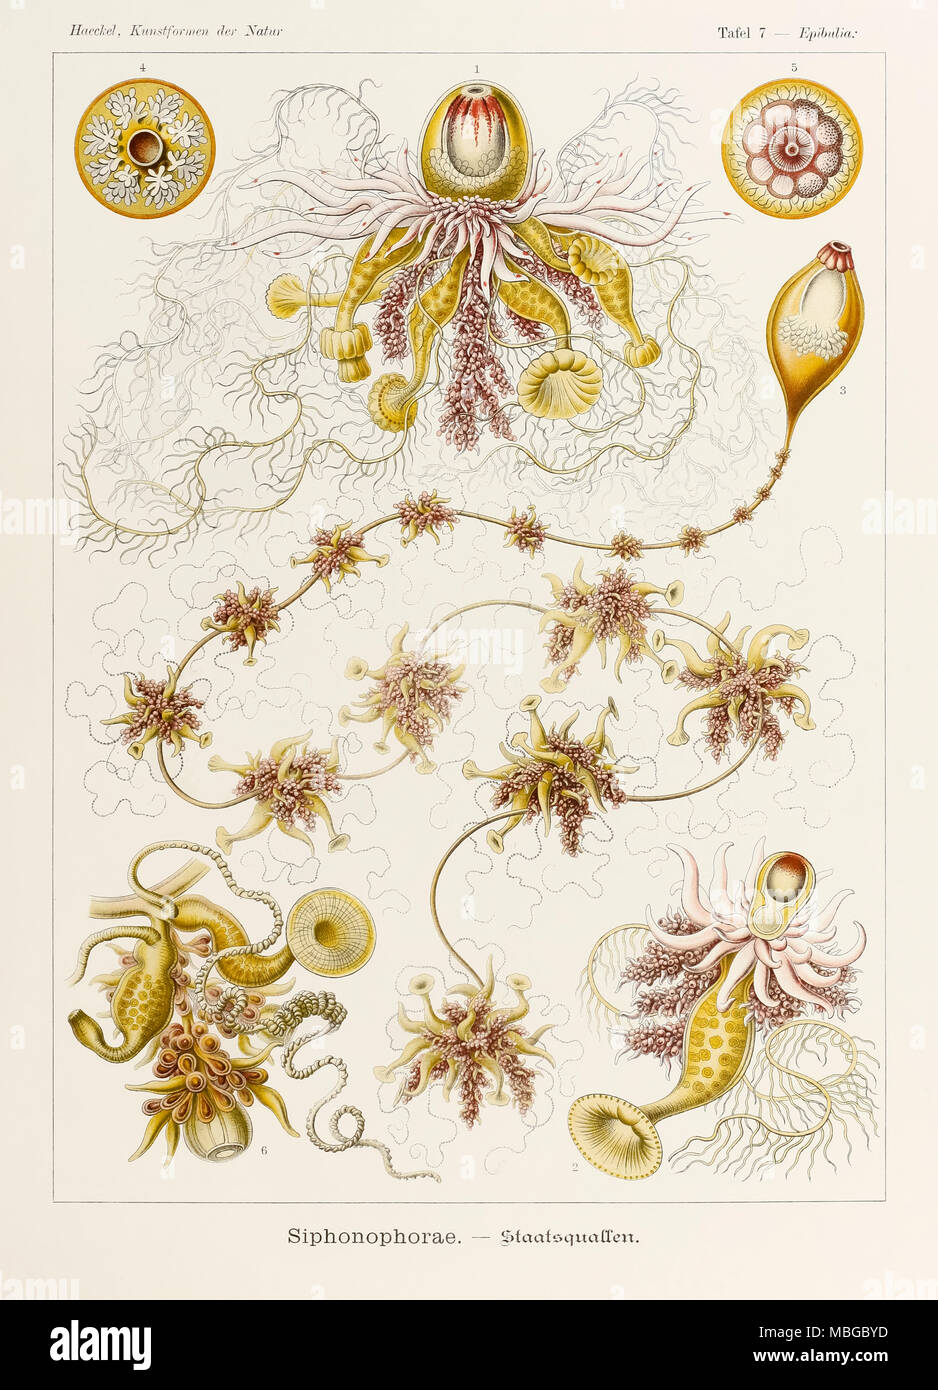 Platte 7 Epibulia Siphonophorae von 'Kunstformen der Natur' (Kunstformen in der Natur), illustriert von Ernst Haeckel (1834-1919). Weitere Informationen finden Sie unten. Stockfoto